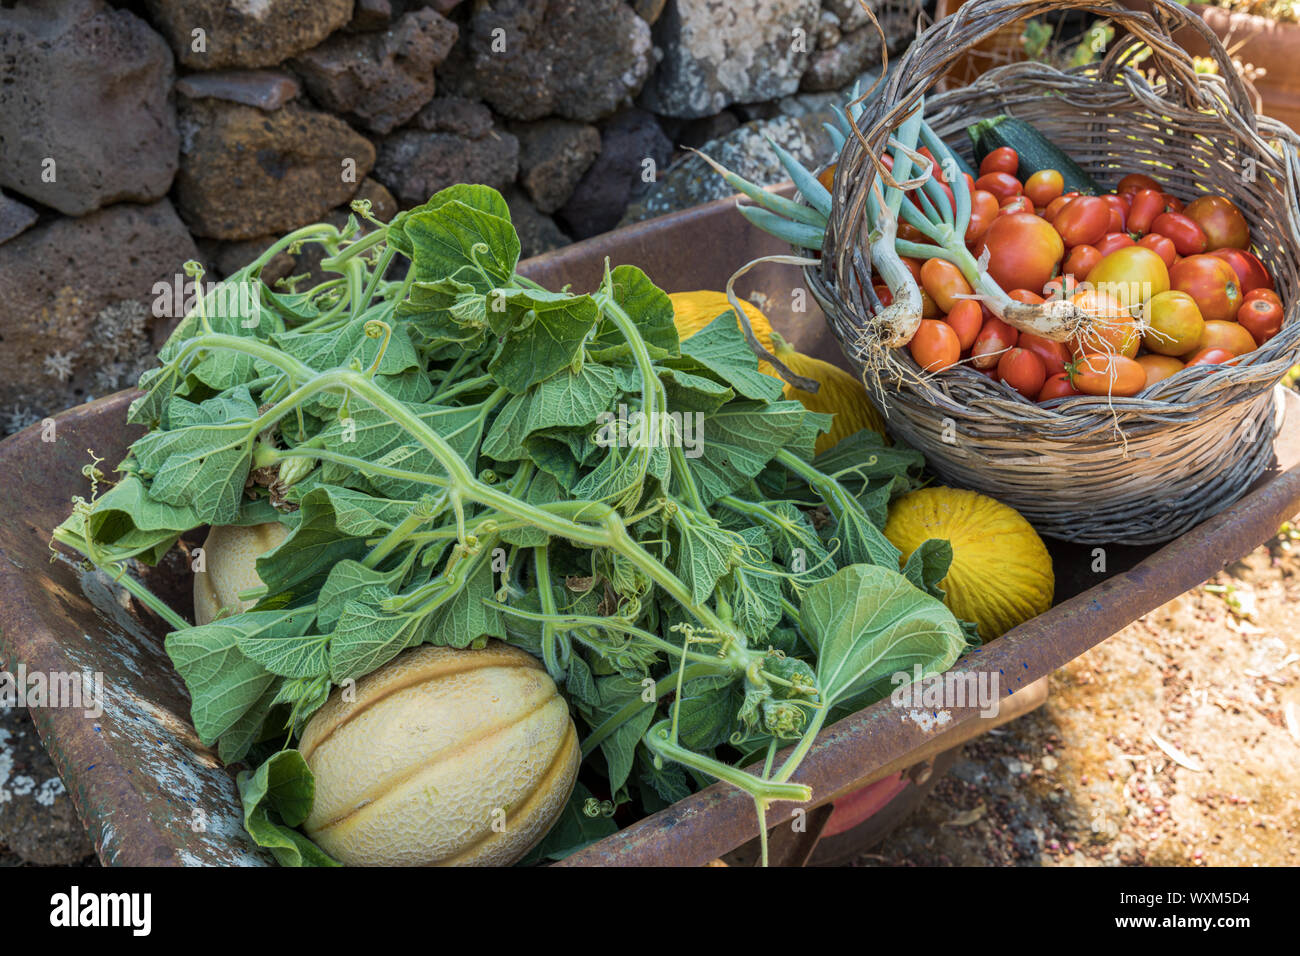 Des légumes frais et des fruits dans une brouette. Courge longue feuilles, melon, cantaloup et panier en osier avec tomates, courgettes et ciboulette Banque D'Images